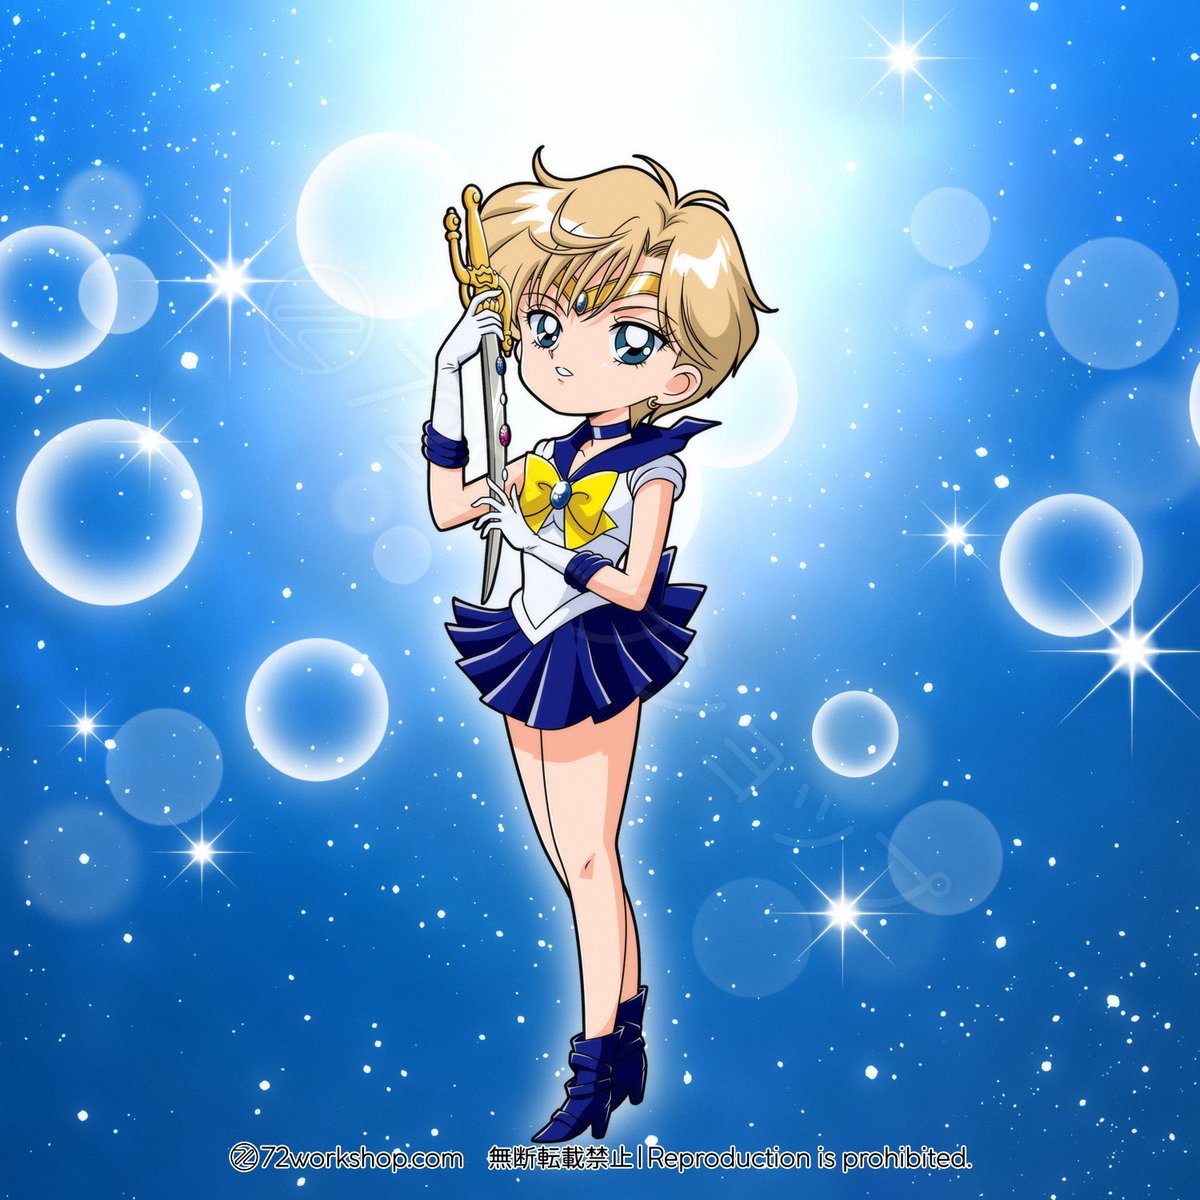 はるかさんお誕生日おめでとう🎂💙

#天王はるか生誕祭
#天王はるか生誕祭2024
#セーラーウラヌス
#SailorUranus
#天王はるか
#美少女戦士セーラームーン
#セーラームーン
#SailorMoon